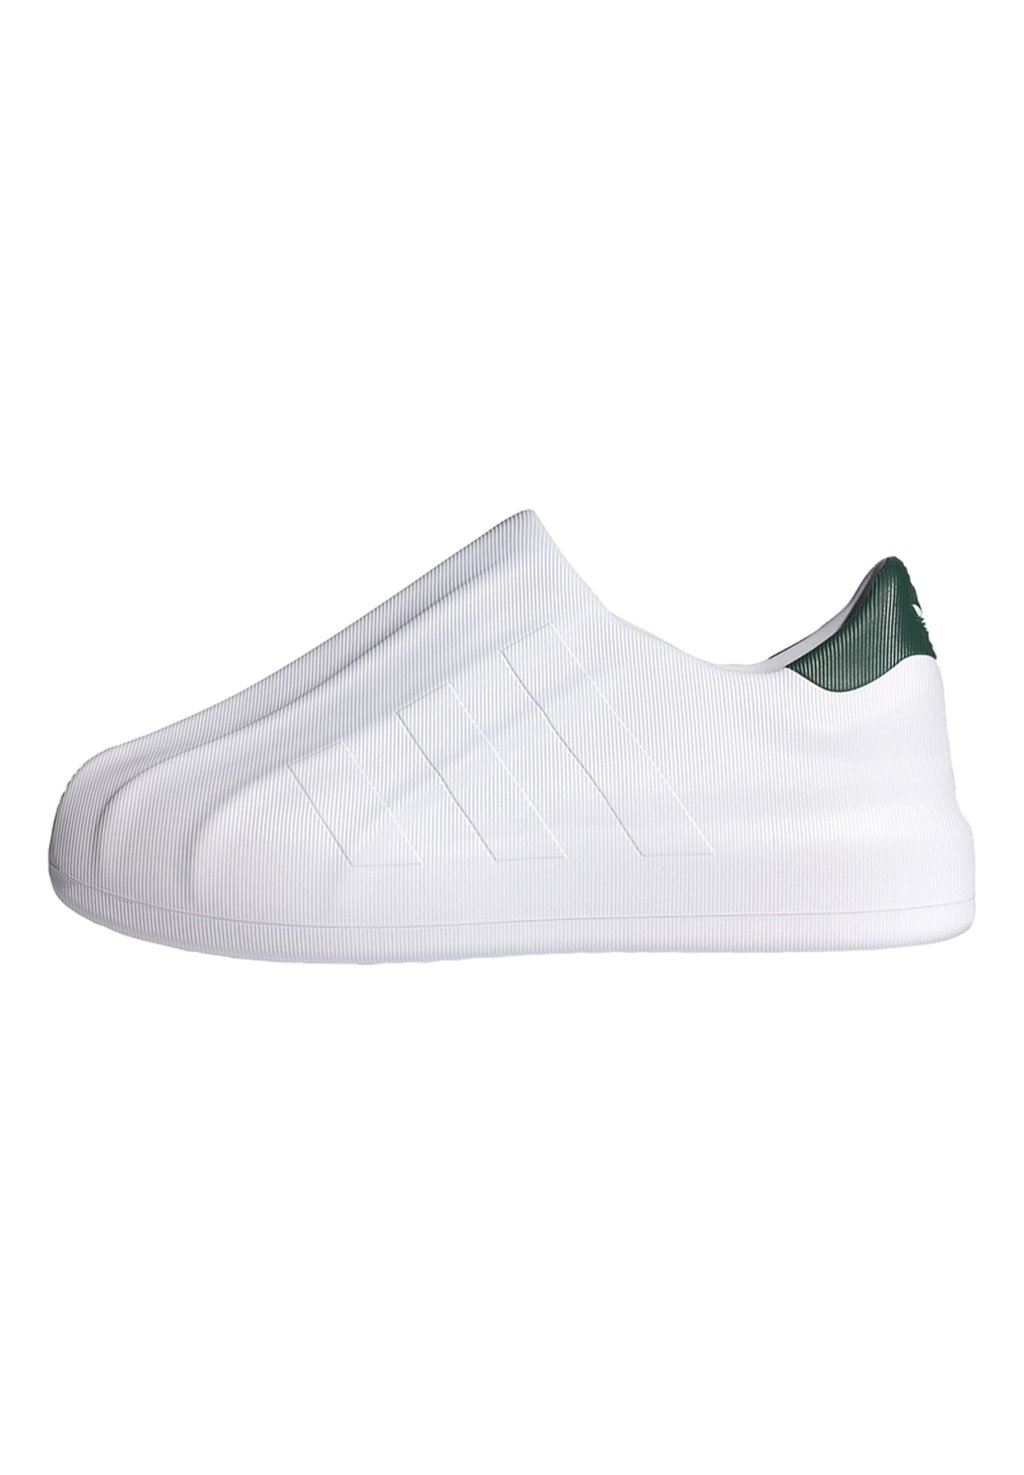 Кроссовки низкие ADIFOM SUPERSTAR UNISEX adidas Originals, цвет ftwr white/collegiate green/ftwr white кроссовки adidas originals hoops ftwr white